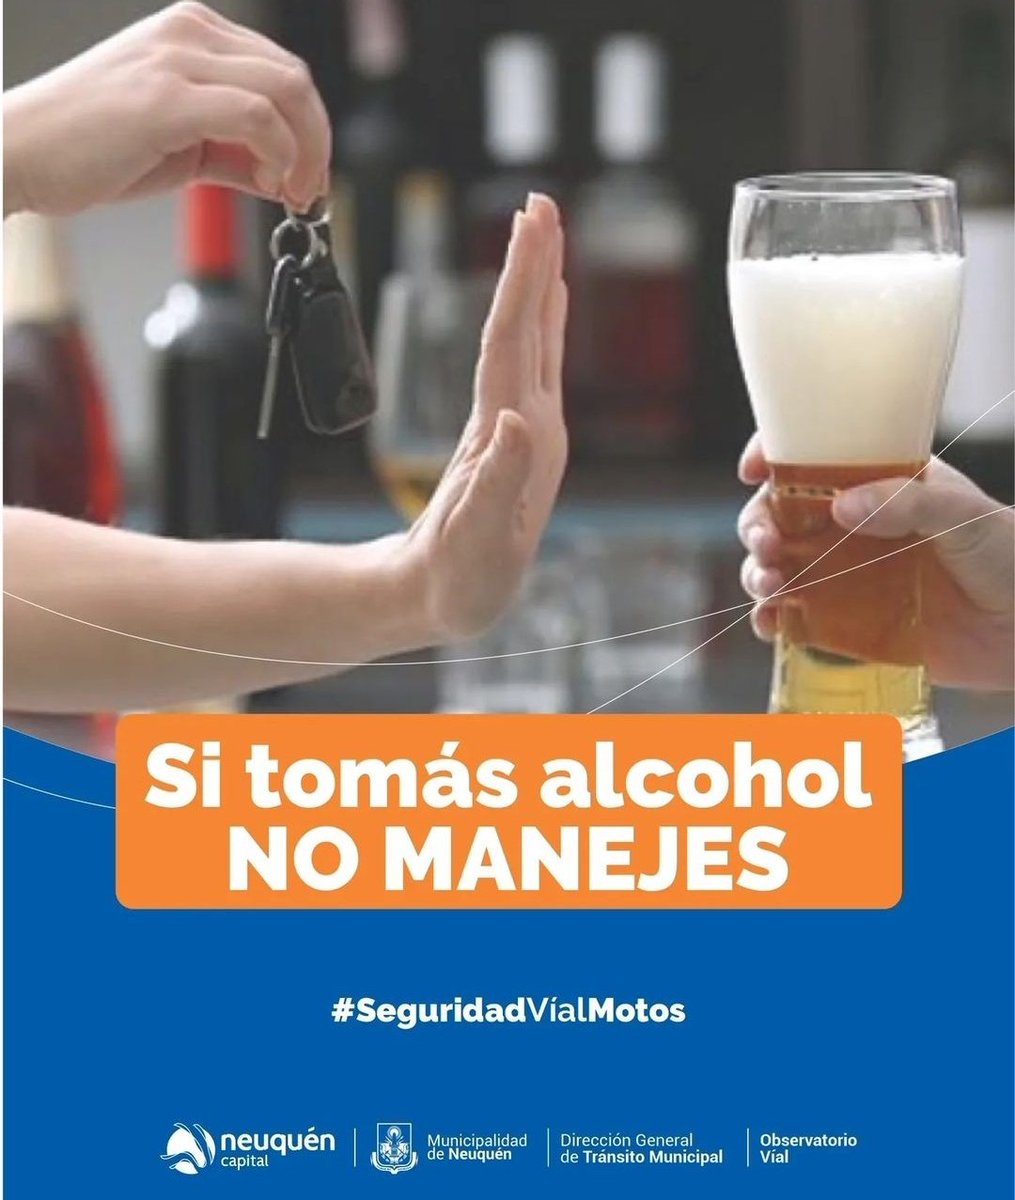 #AlcoholCero Cuidate y Cuidanos !!!